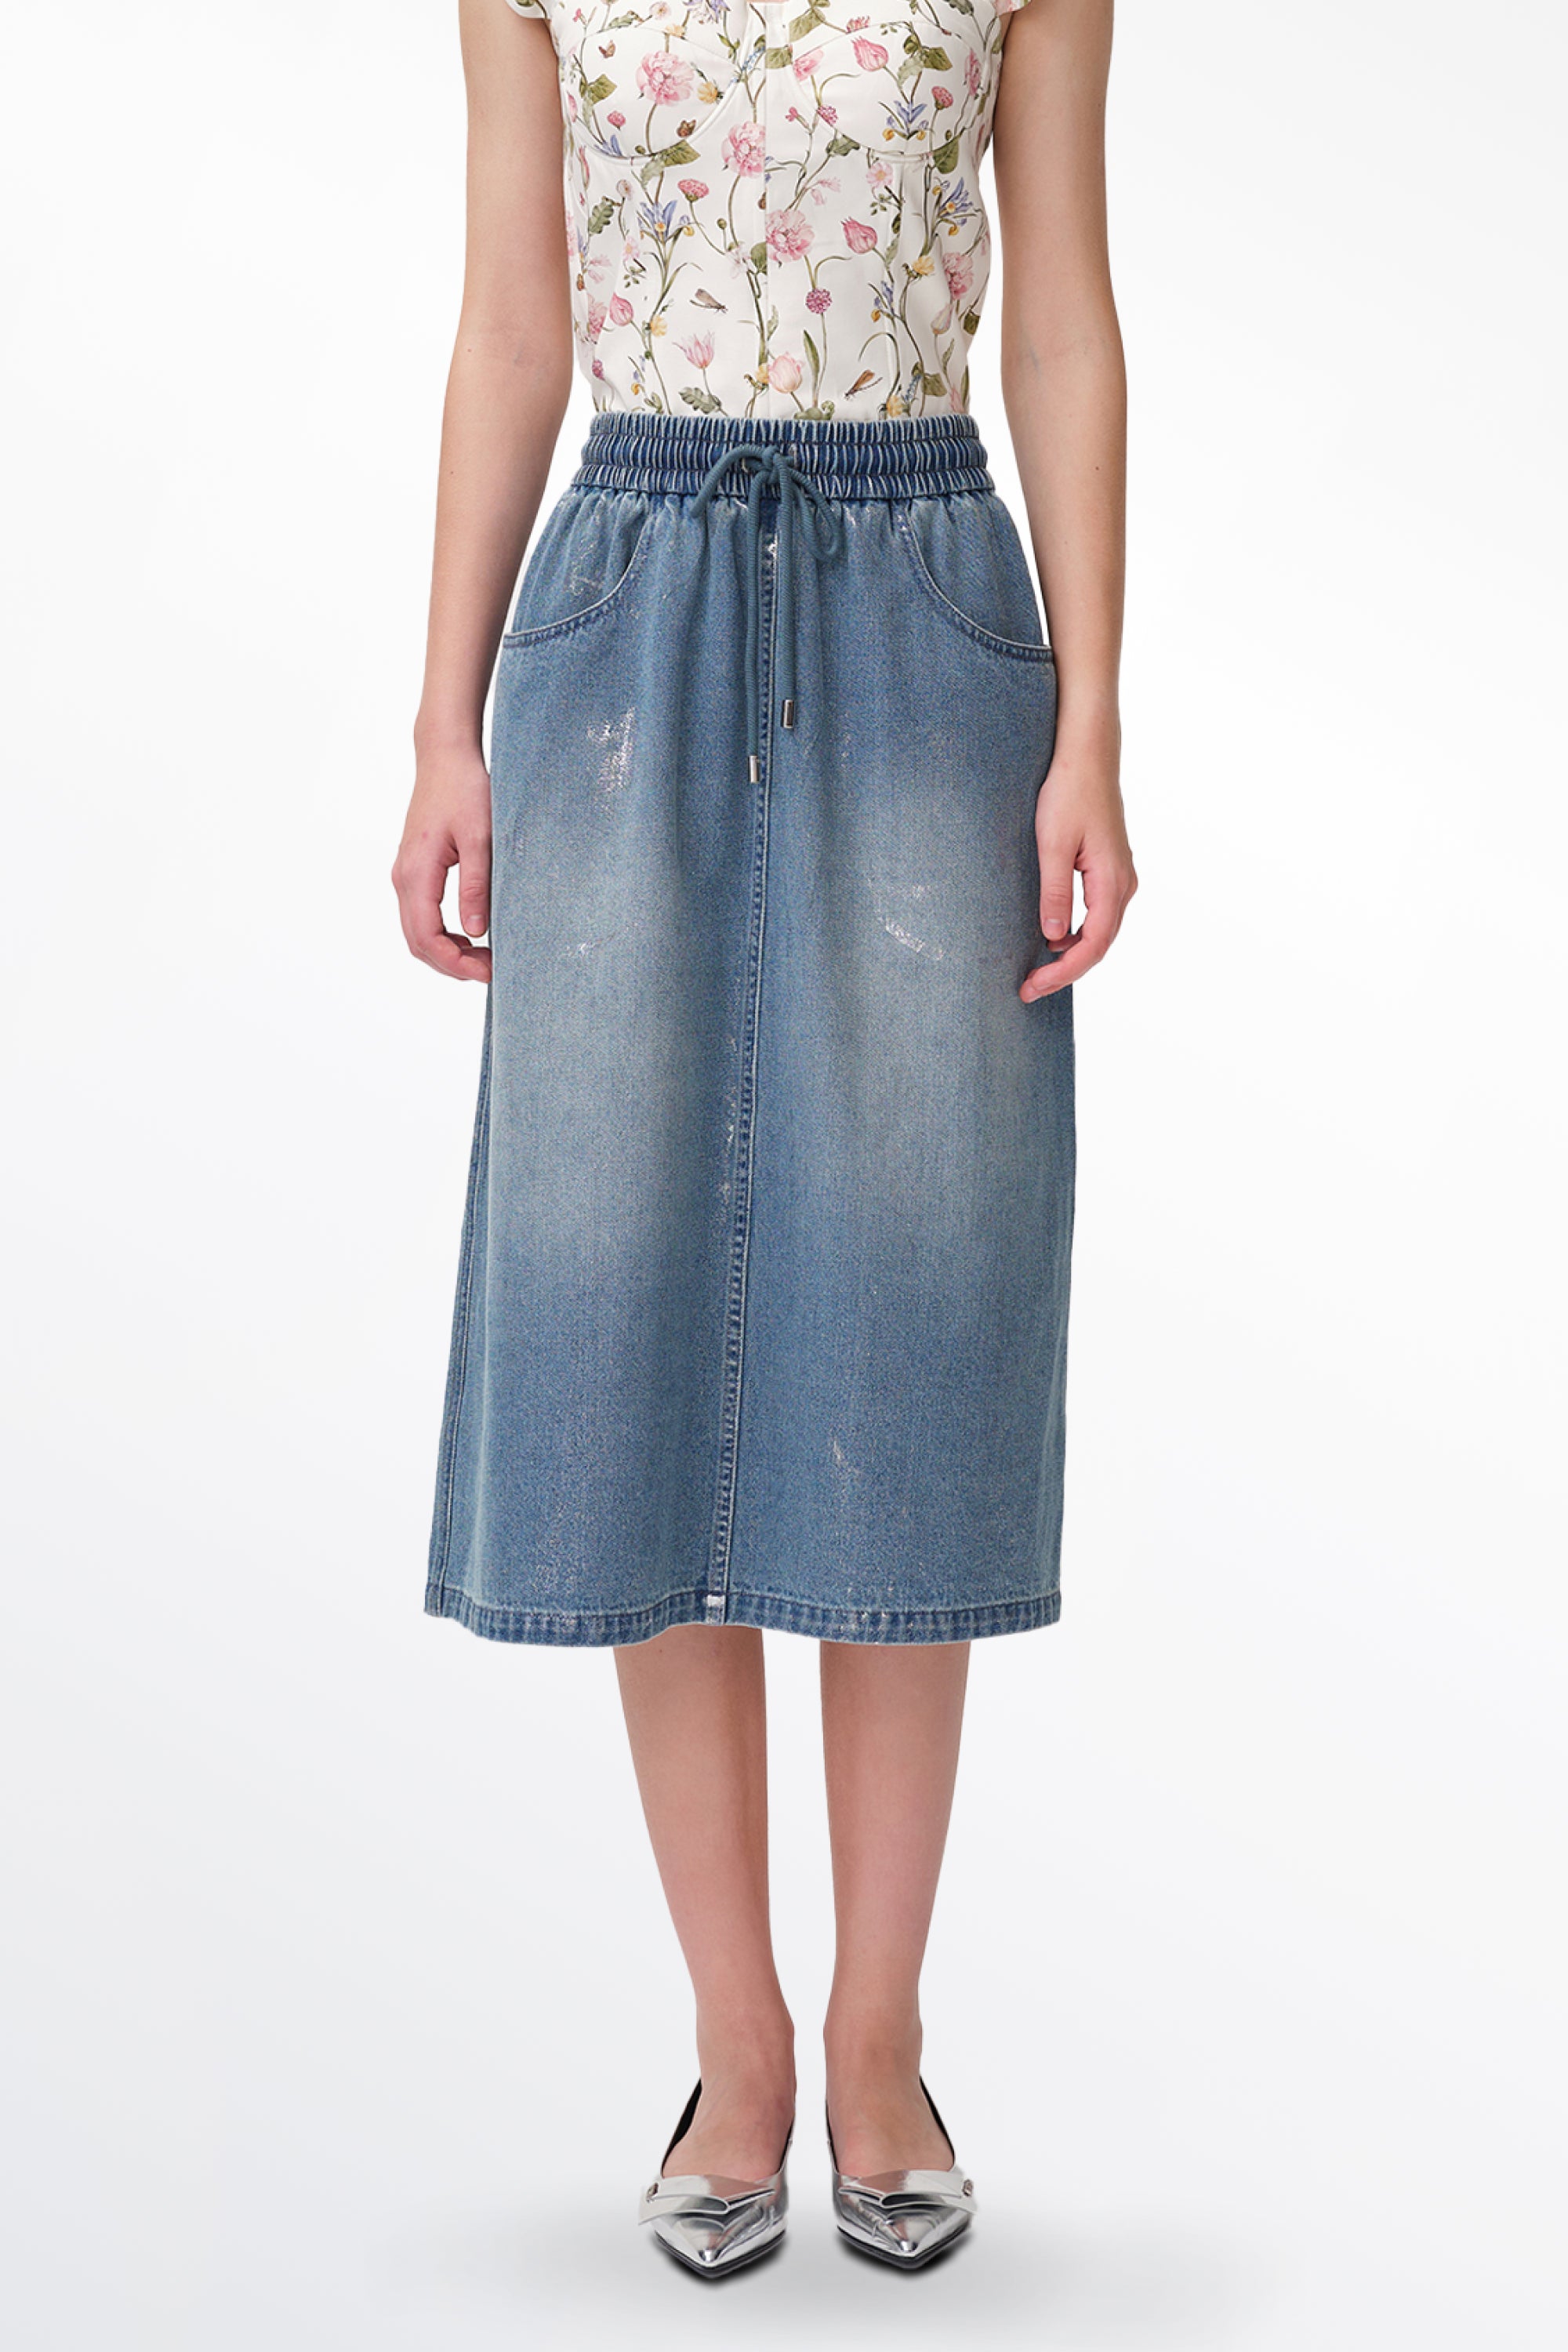 Dulsie Shimmer Midi Skirt in Cotton Denim